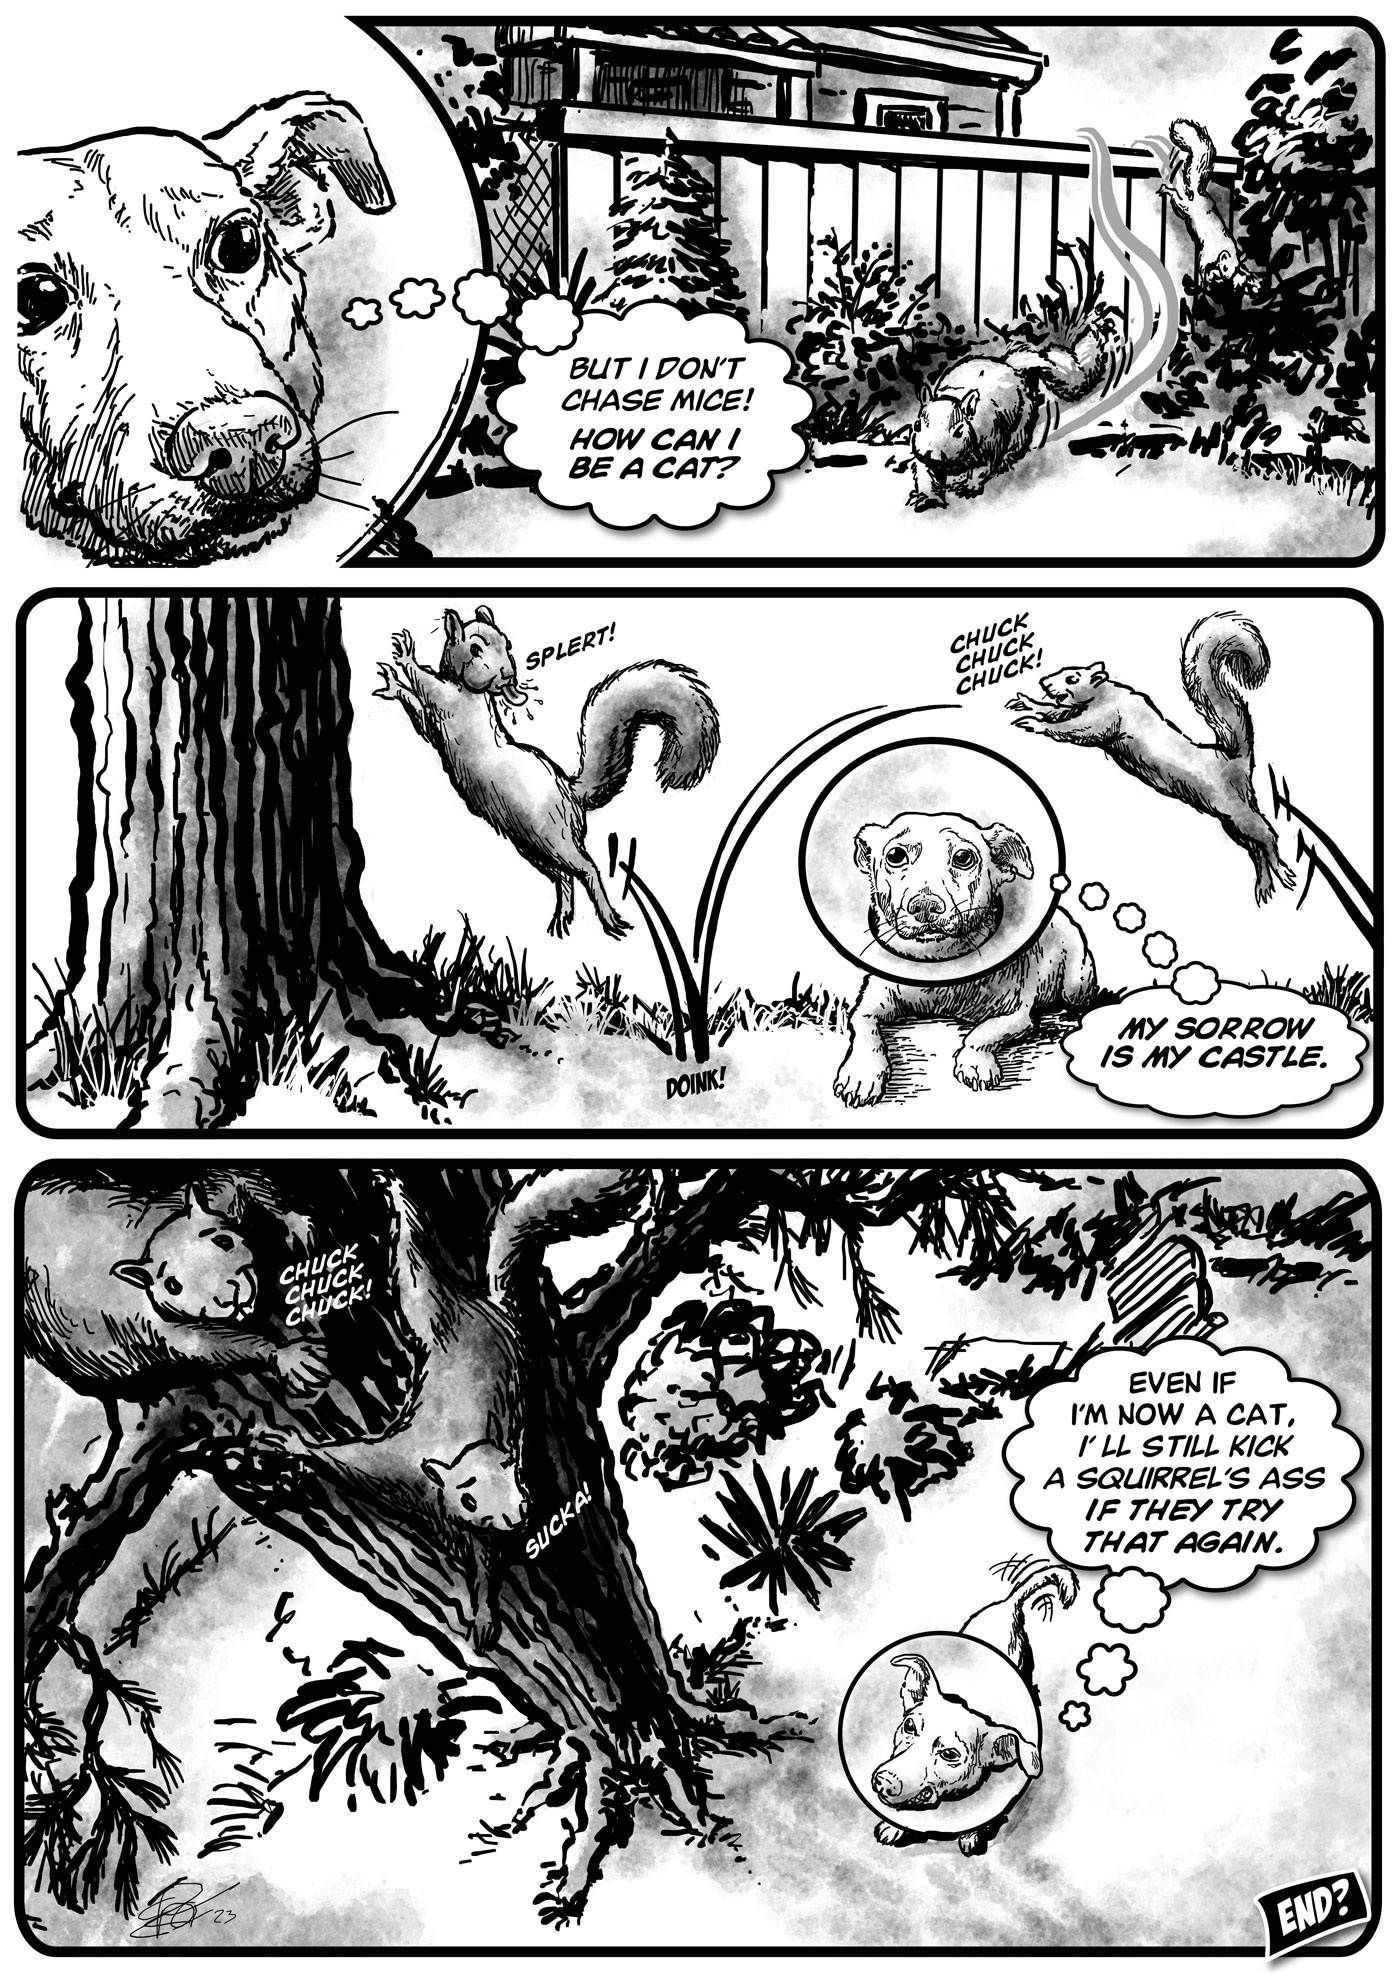 Barkegaard Page2 comic by ER Flynn